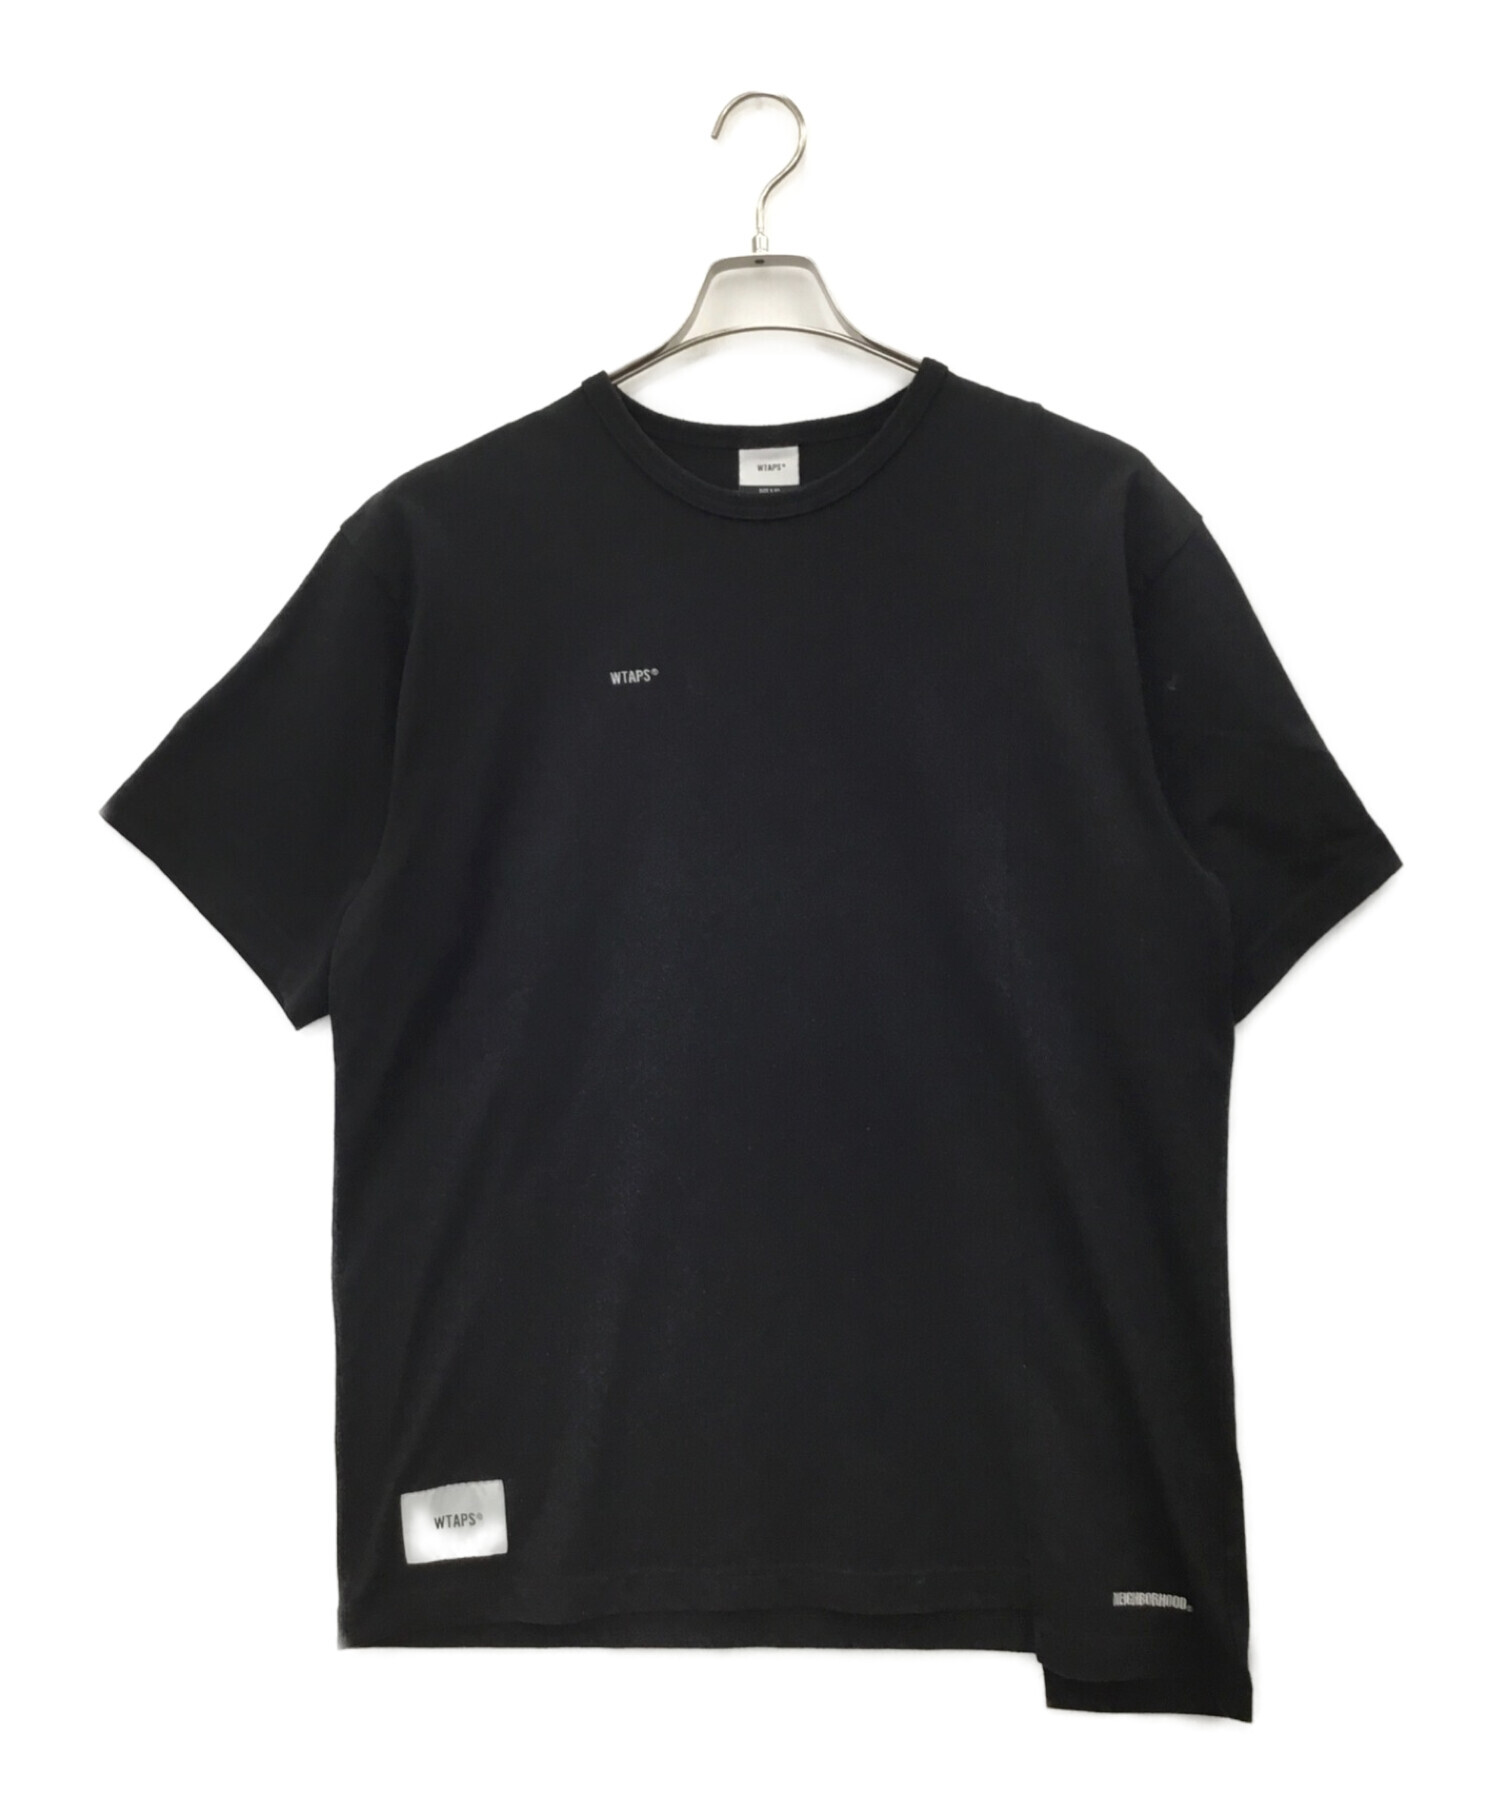 WTAPS (ダブルタップス) NEIGHBORHOOD (ネイバーフッド) Tシャツ ブラック サイズ:M